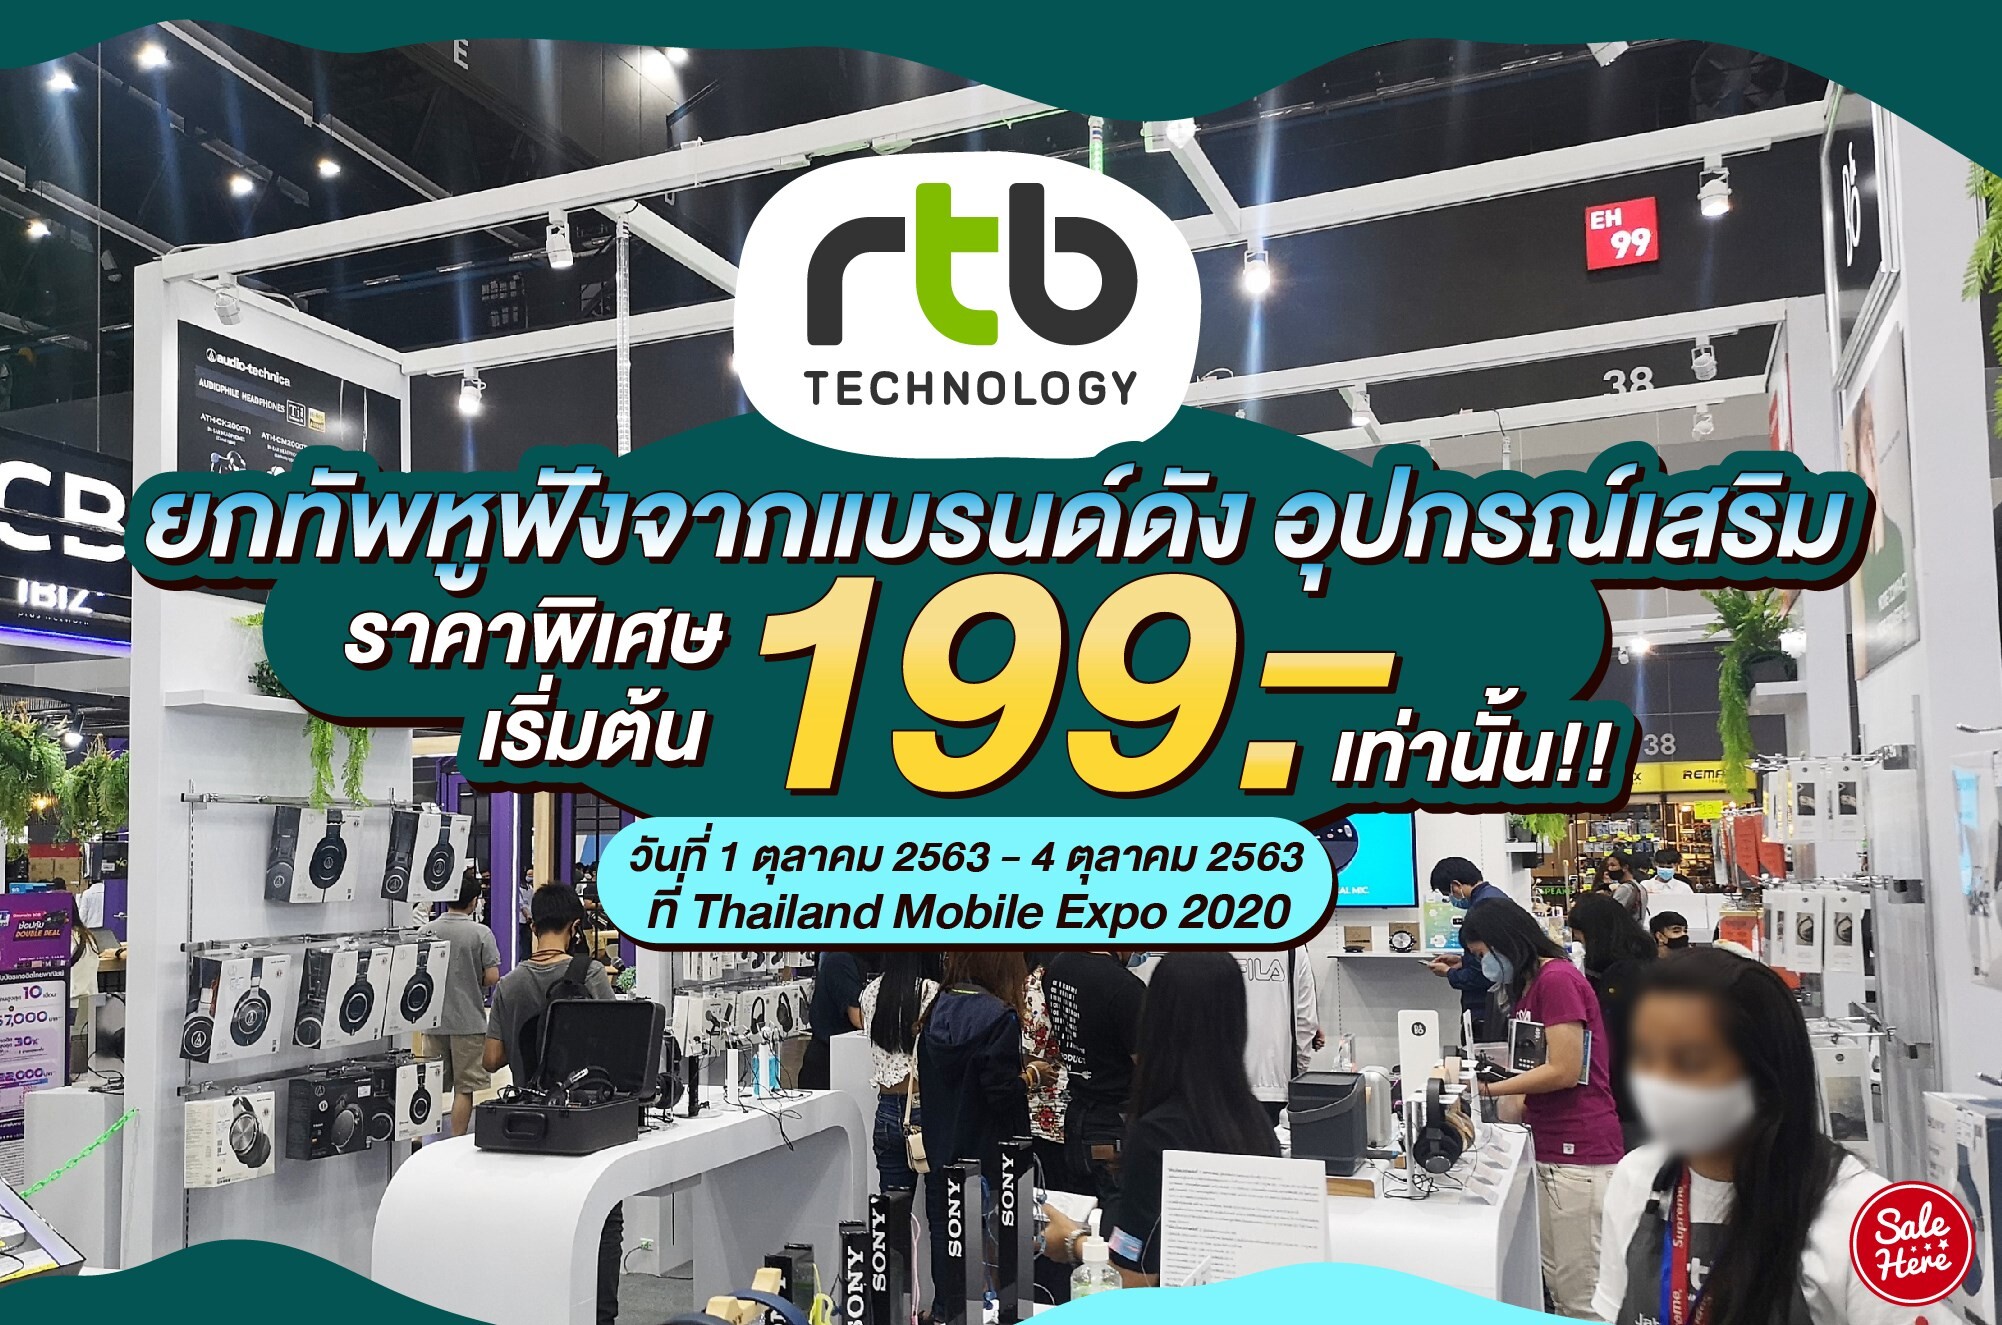 อาร์ทีบี ยกทัพหูฟังจากแบรนด์ดังร่วมงาน Thailand Mobile Expo 2020 ในระหว่างวันที่ 1-4 ตุลาคม 2020 พิเศษ...สินค้าราคาเริ่มต้นที่ 199 บาทเท่านั้น!